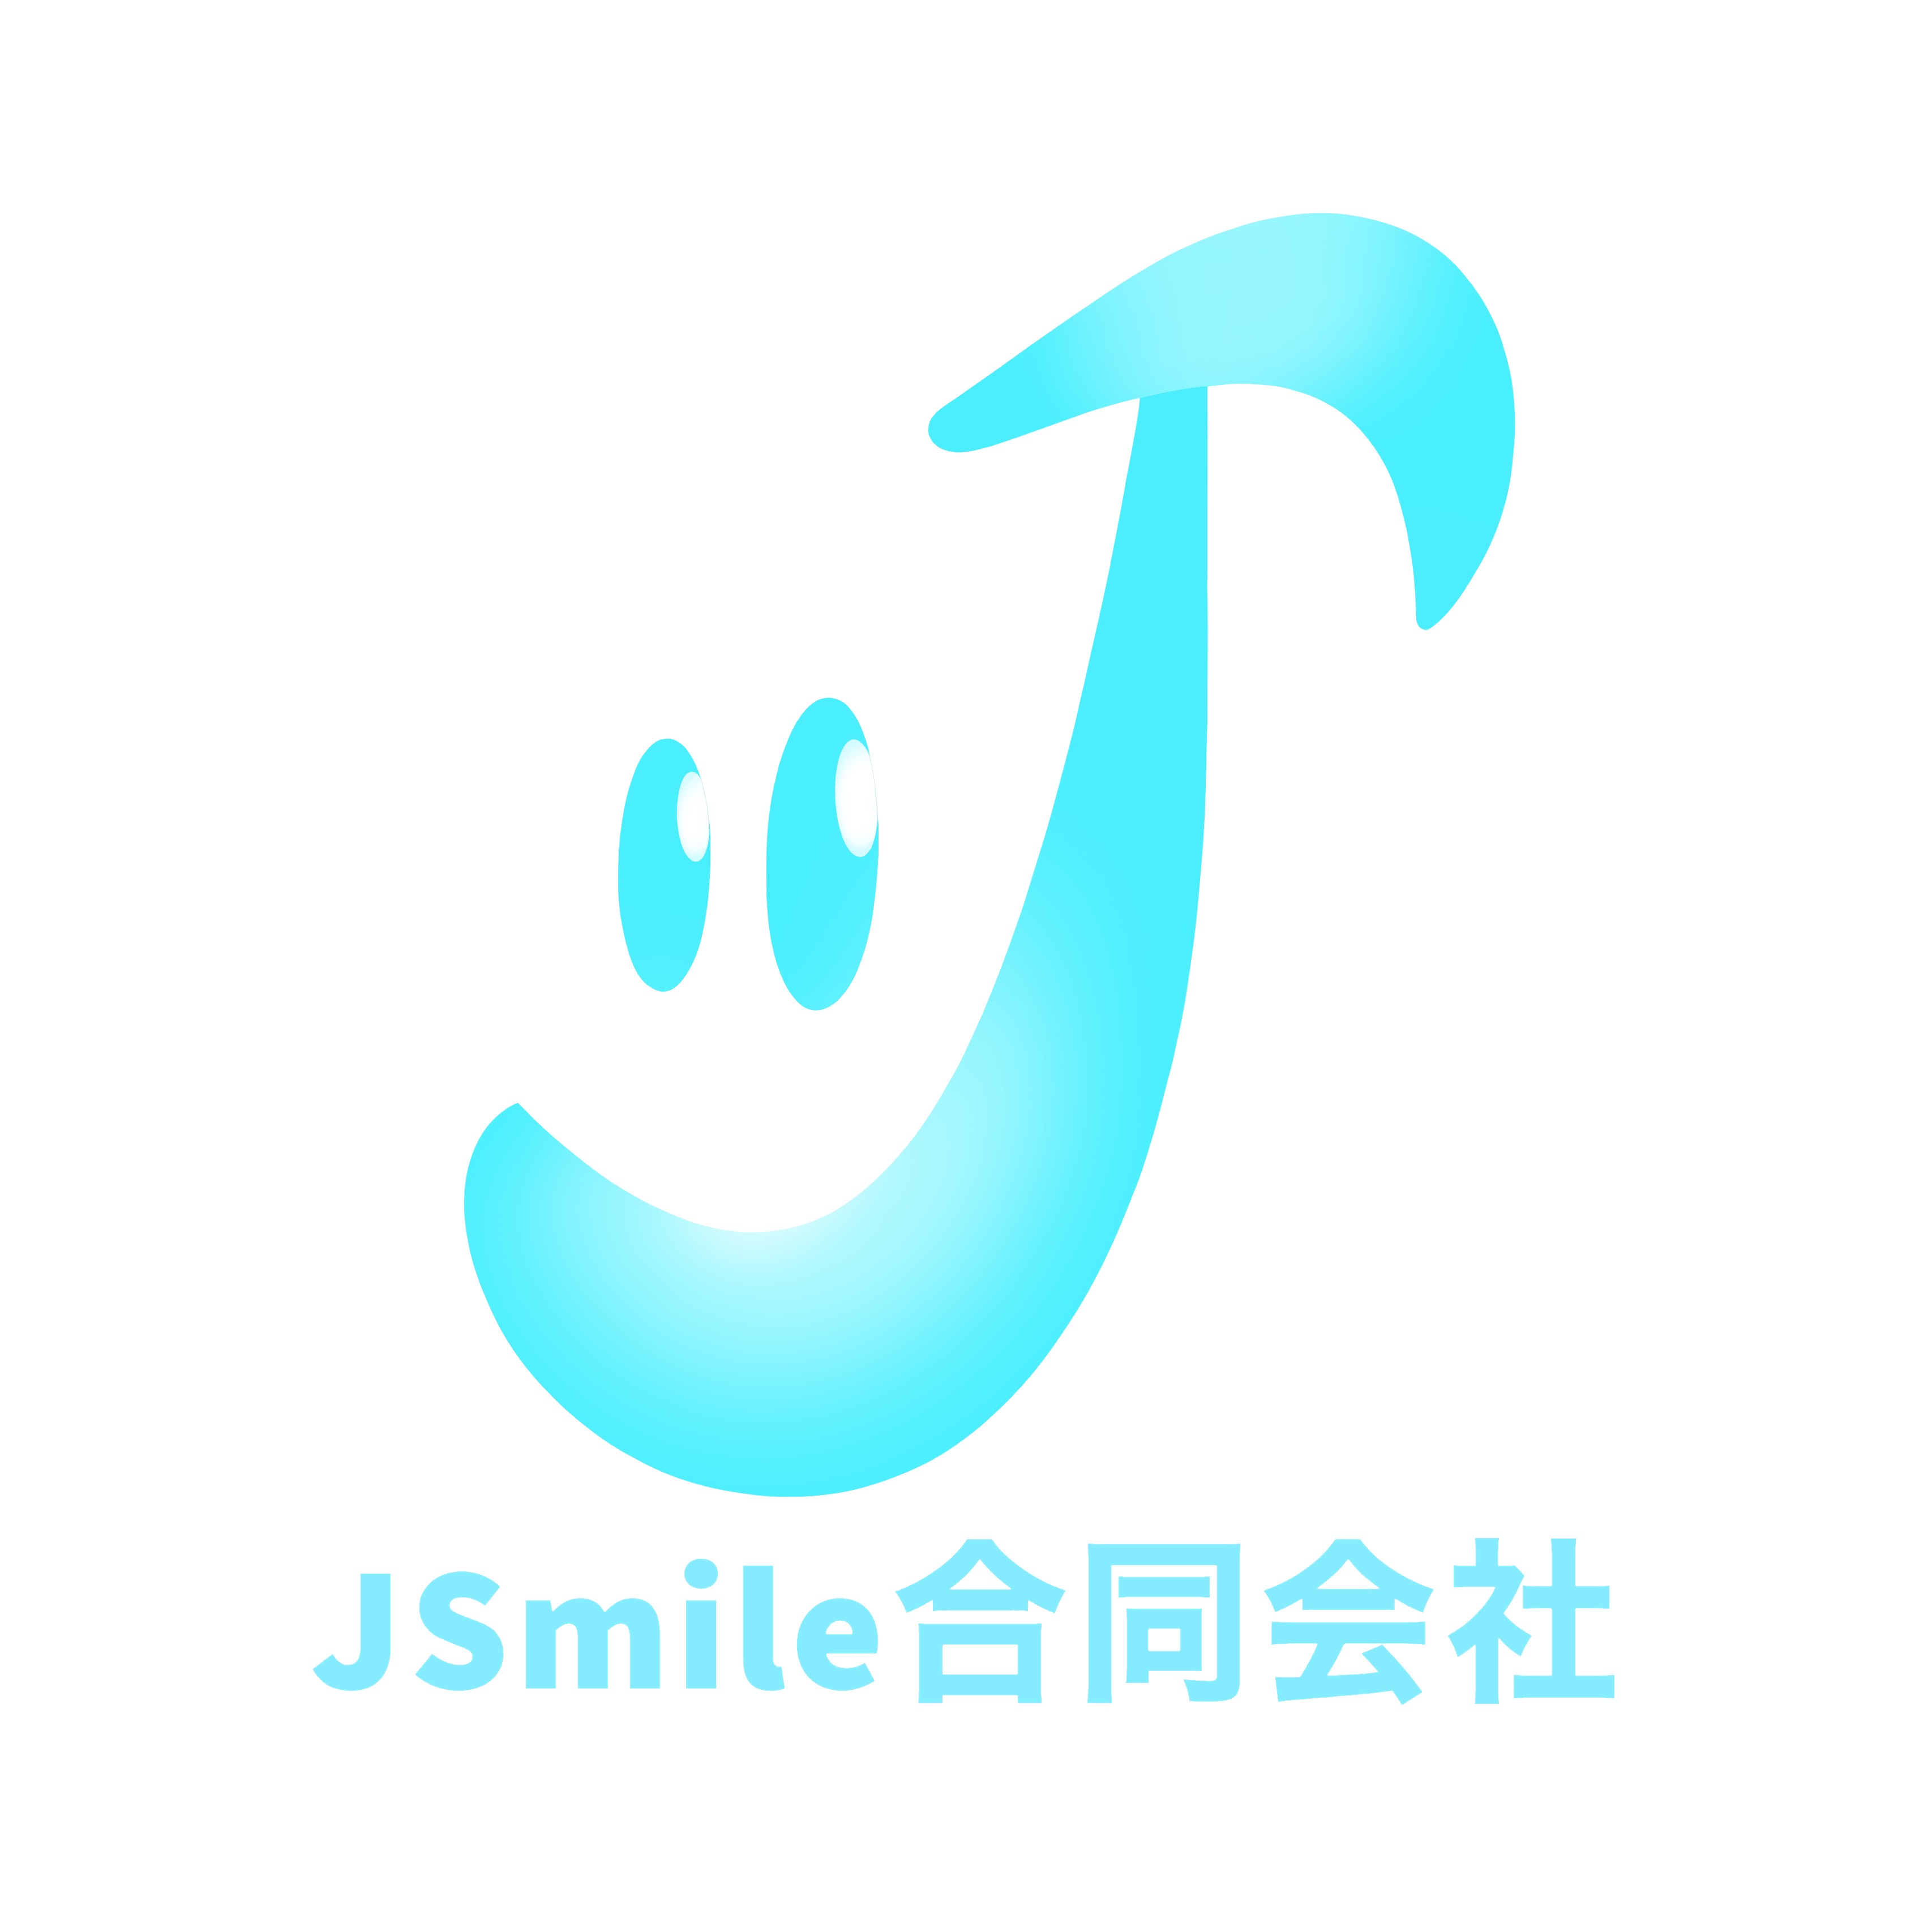 JSmile合同会社